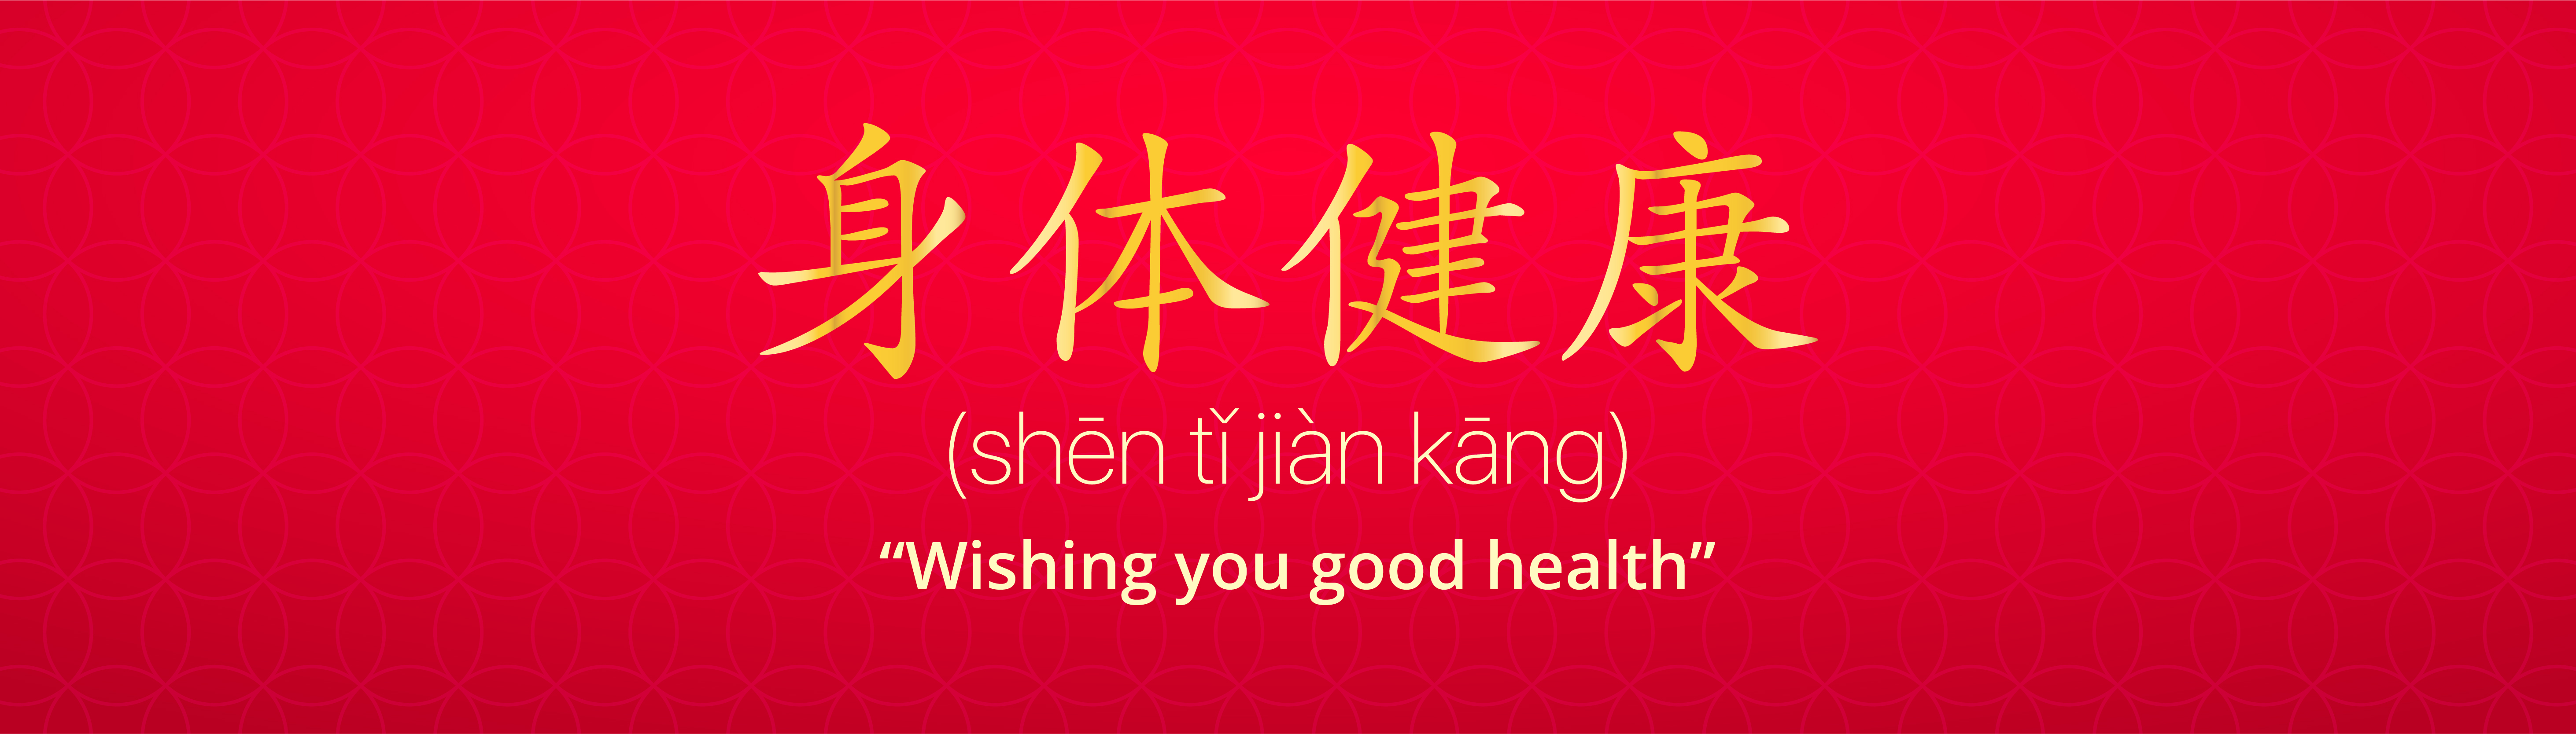 Shen Ti Jian Kang (身体健康): “Wishing you good health”